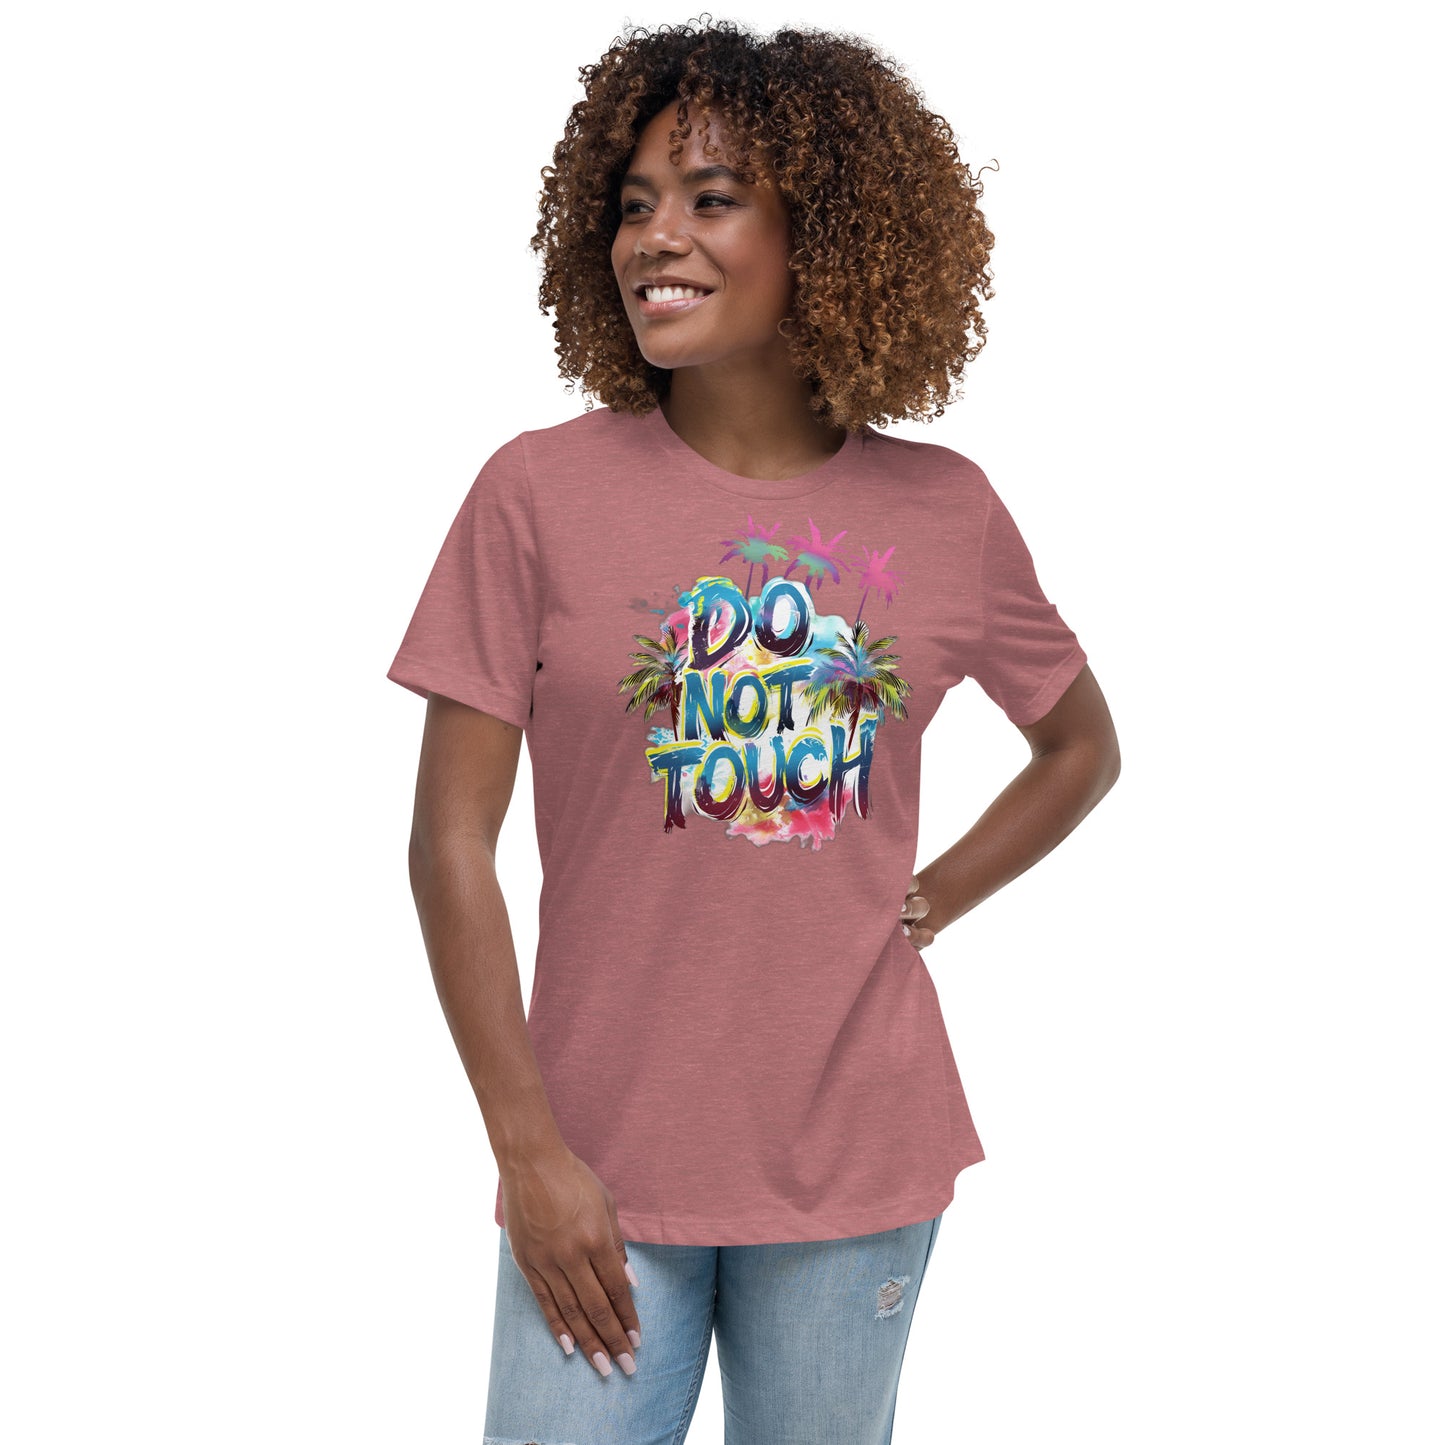 Lockeres Damen-T-Shirt mit starkem Statement